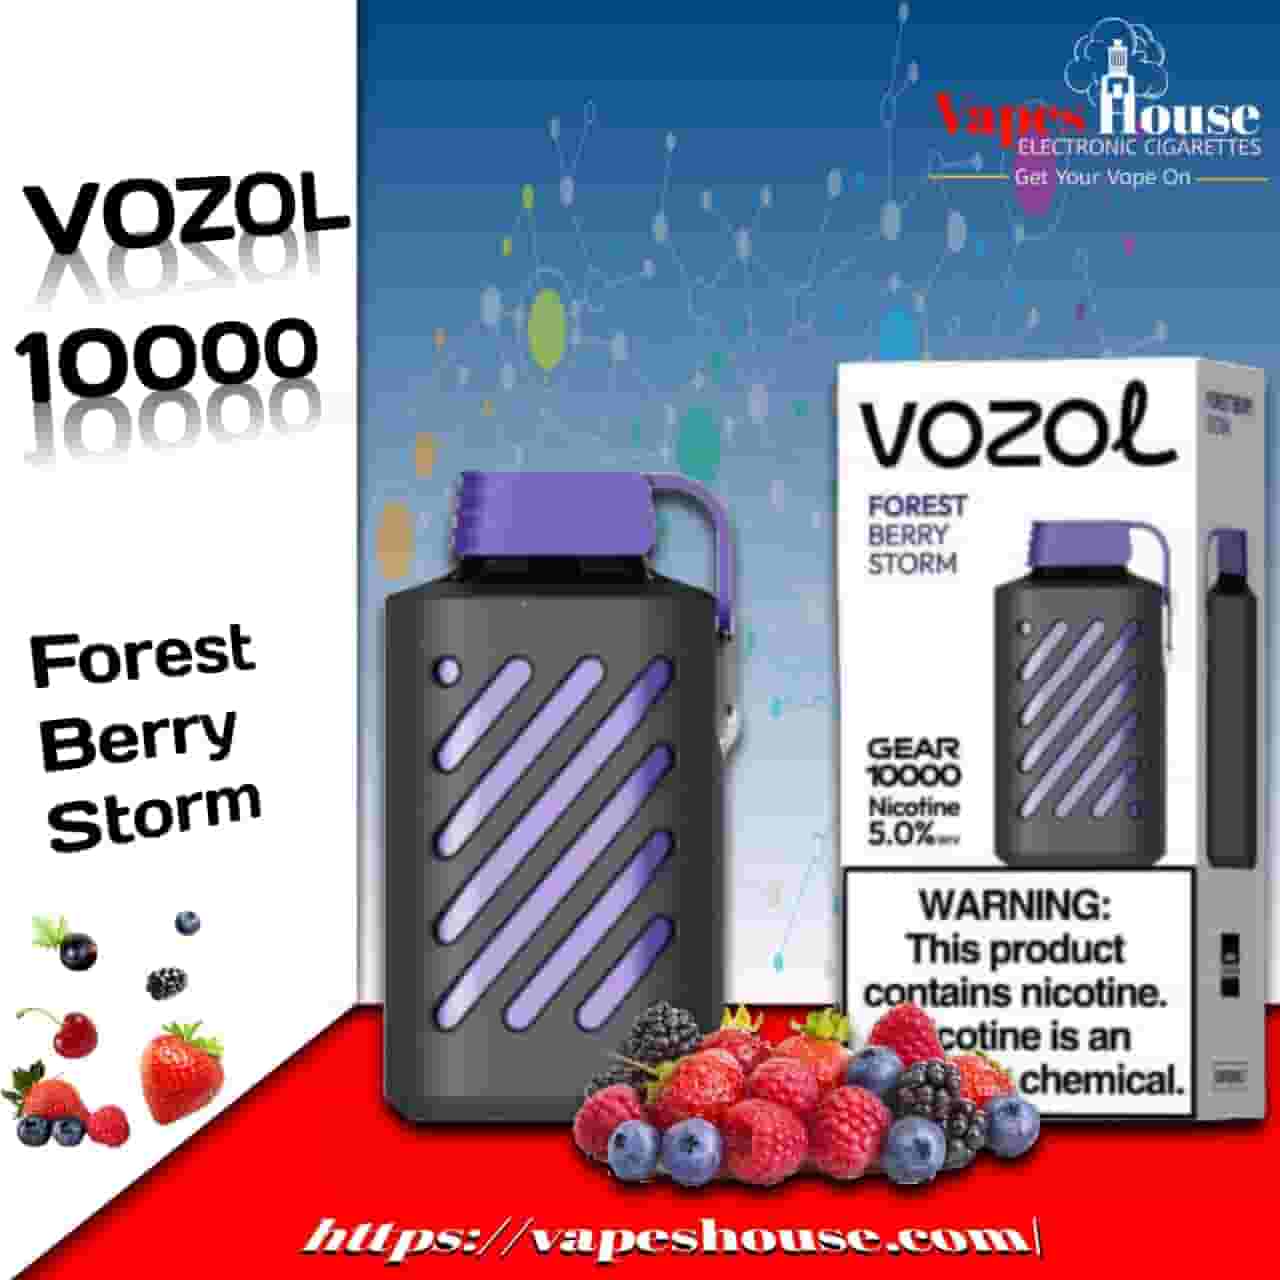 Vozol Gear 10000 Puffs forest barry storm Disposable Vape